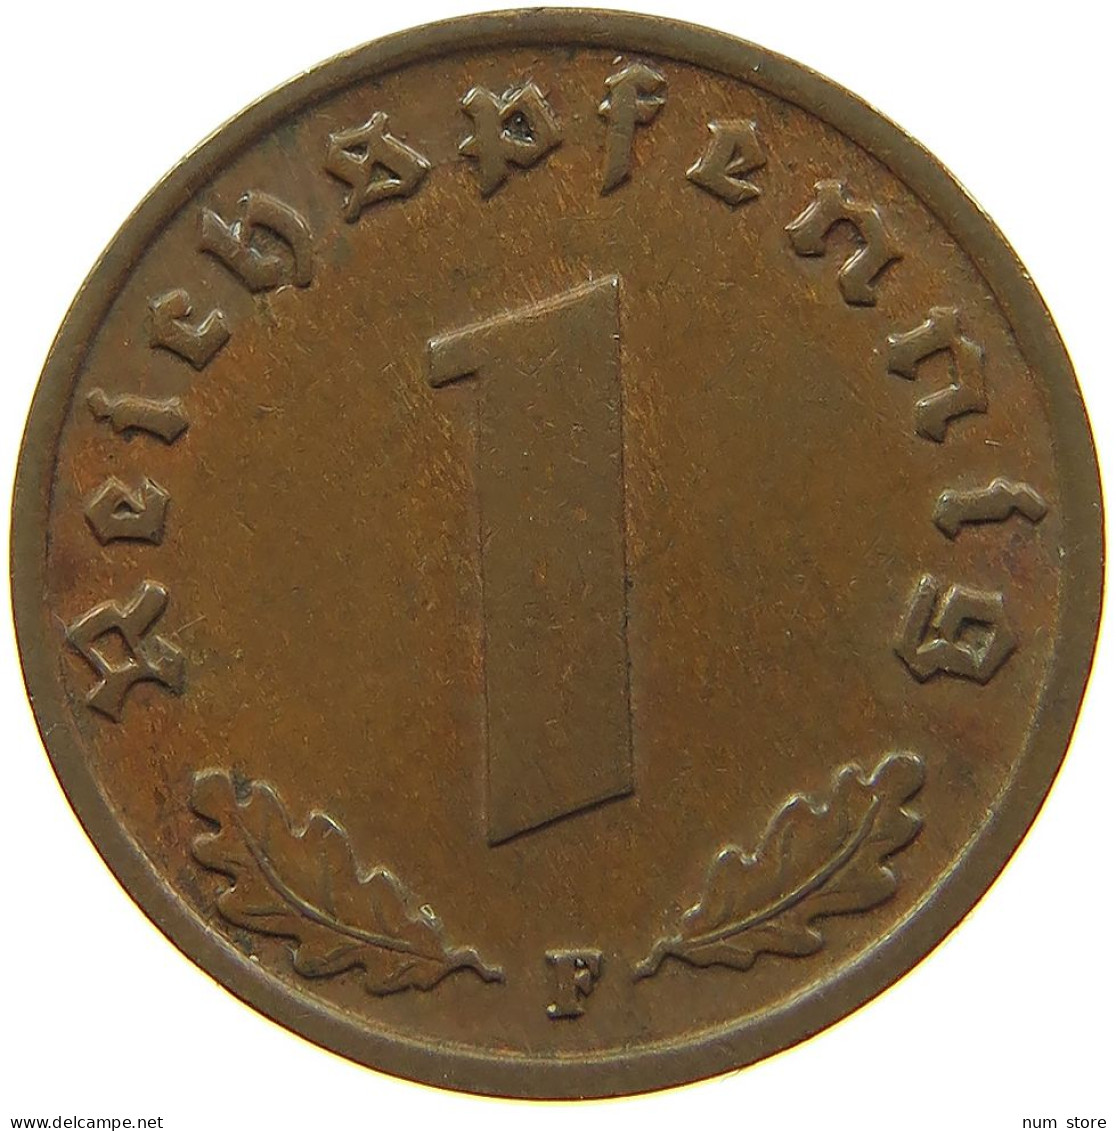 GERMANY 1 REICHSPFENNIG 1937 F #s091 1175 - 1 Reichspfennig